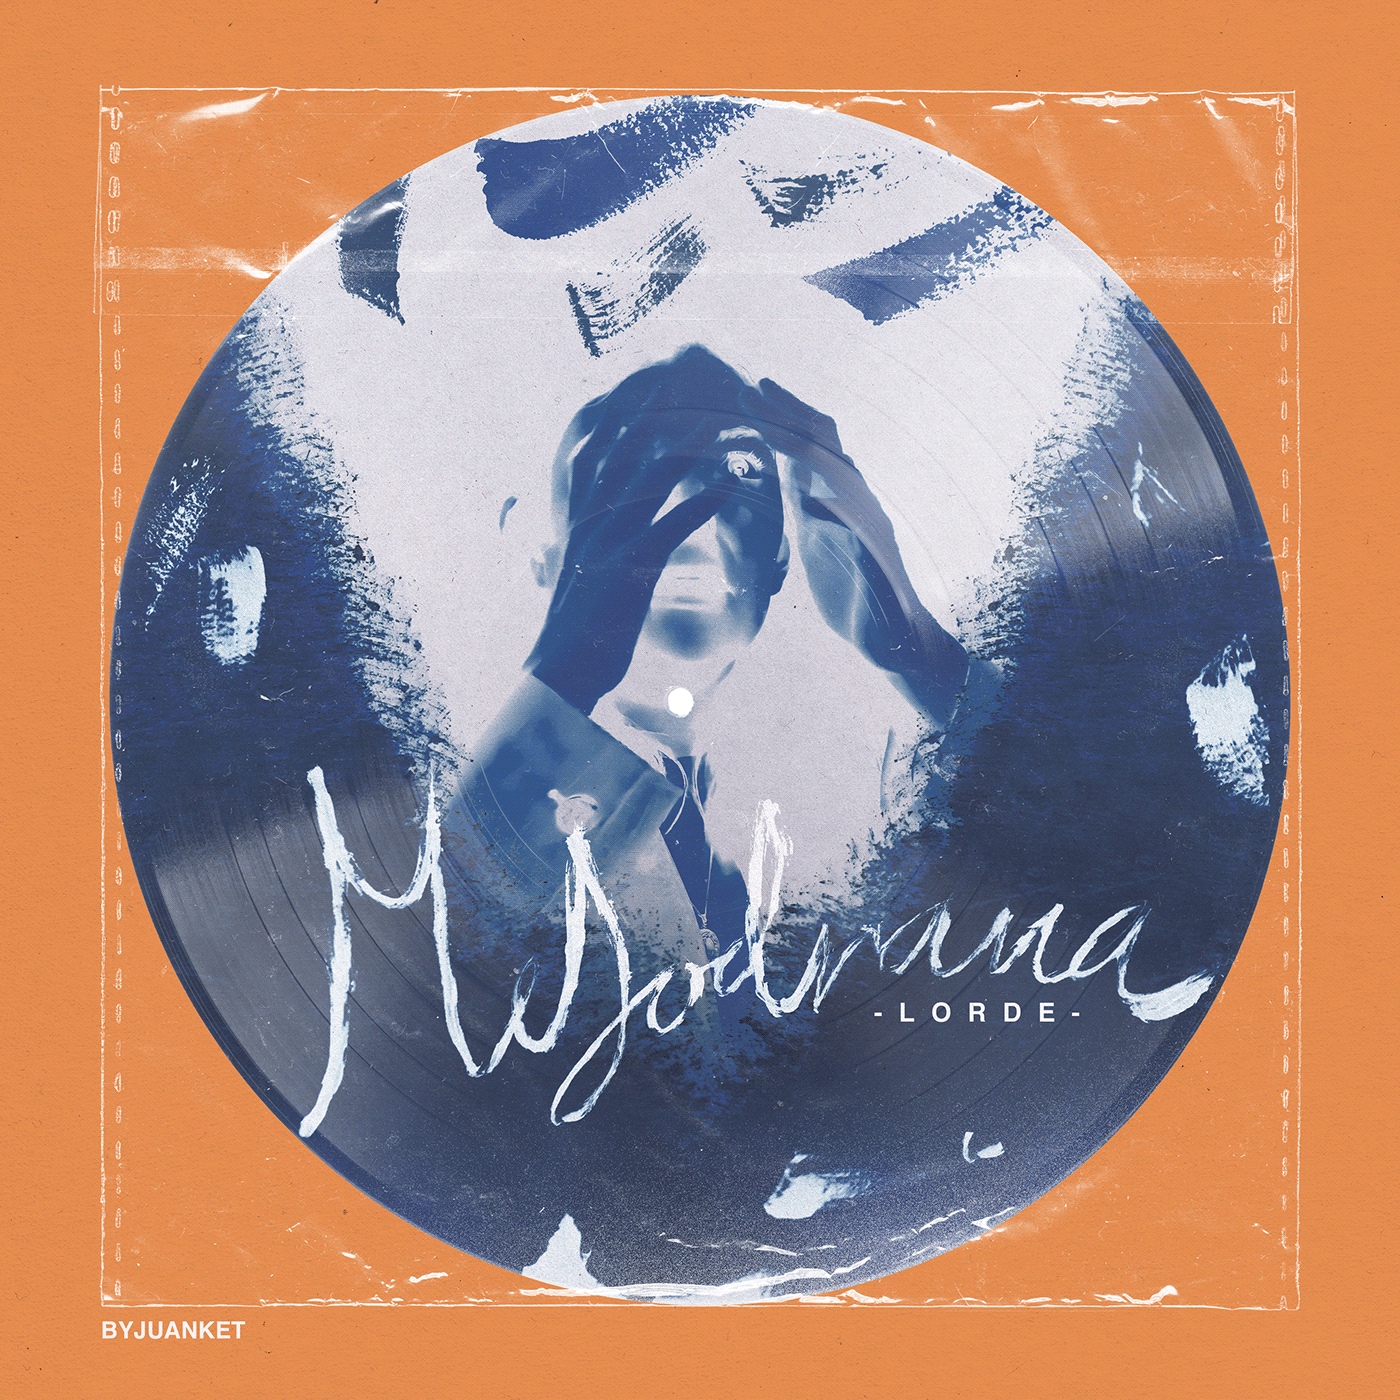 Album album art Album design concept Cover Art design Lorde melodrama music vinyl